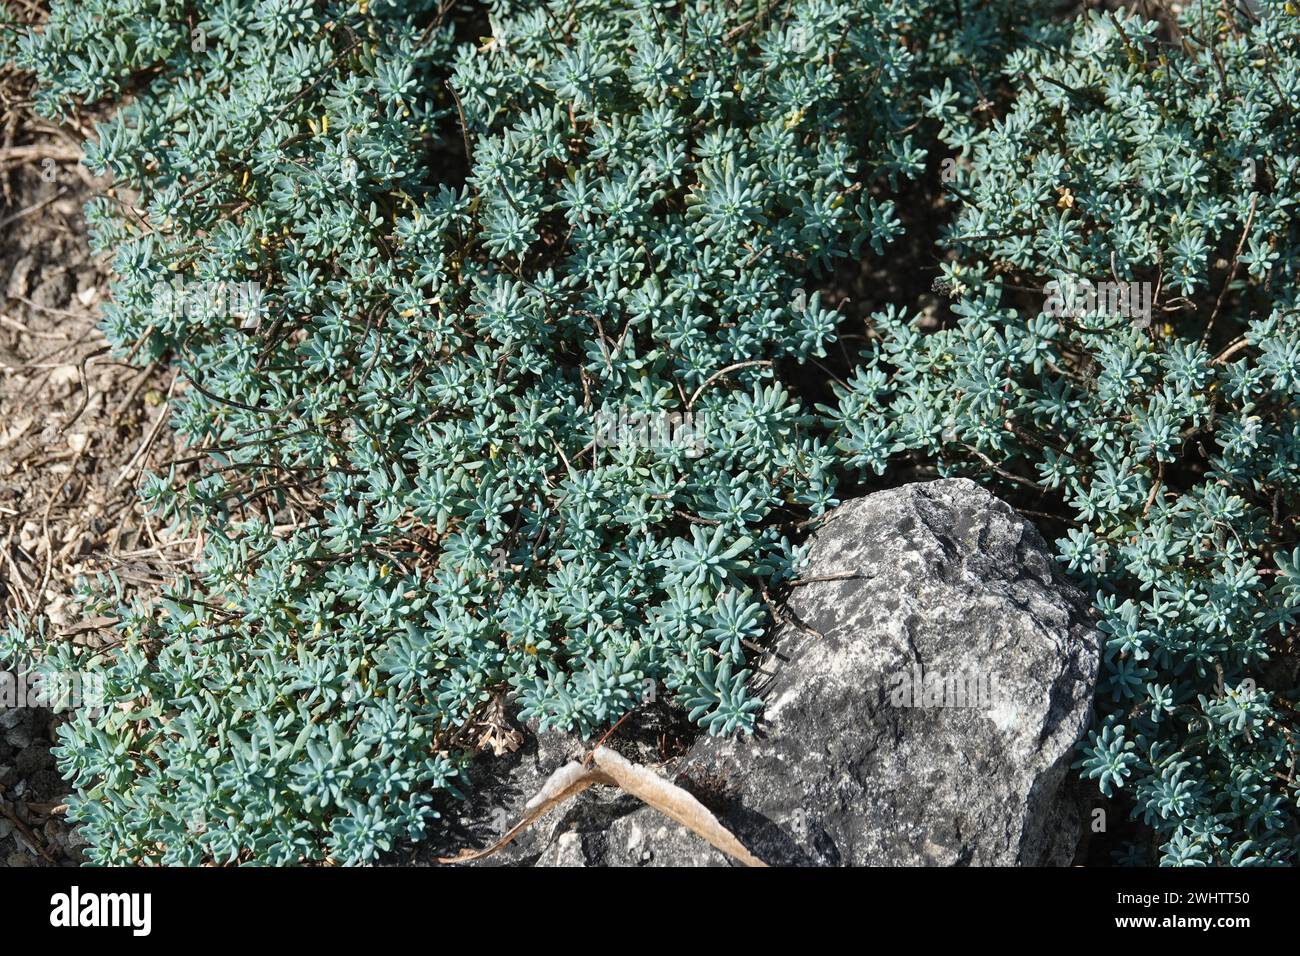 Aethionema grandiflora, Persian stonecress Stock Photo